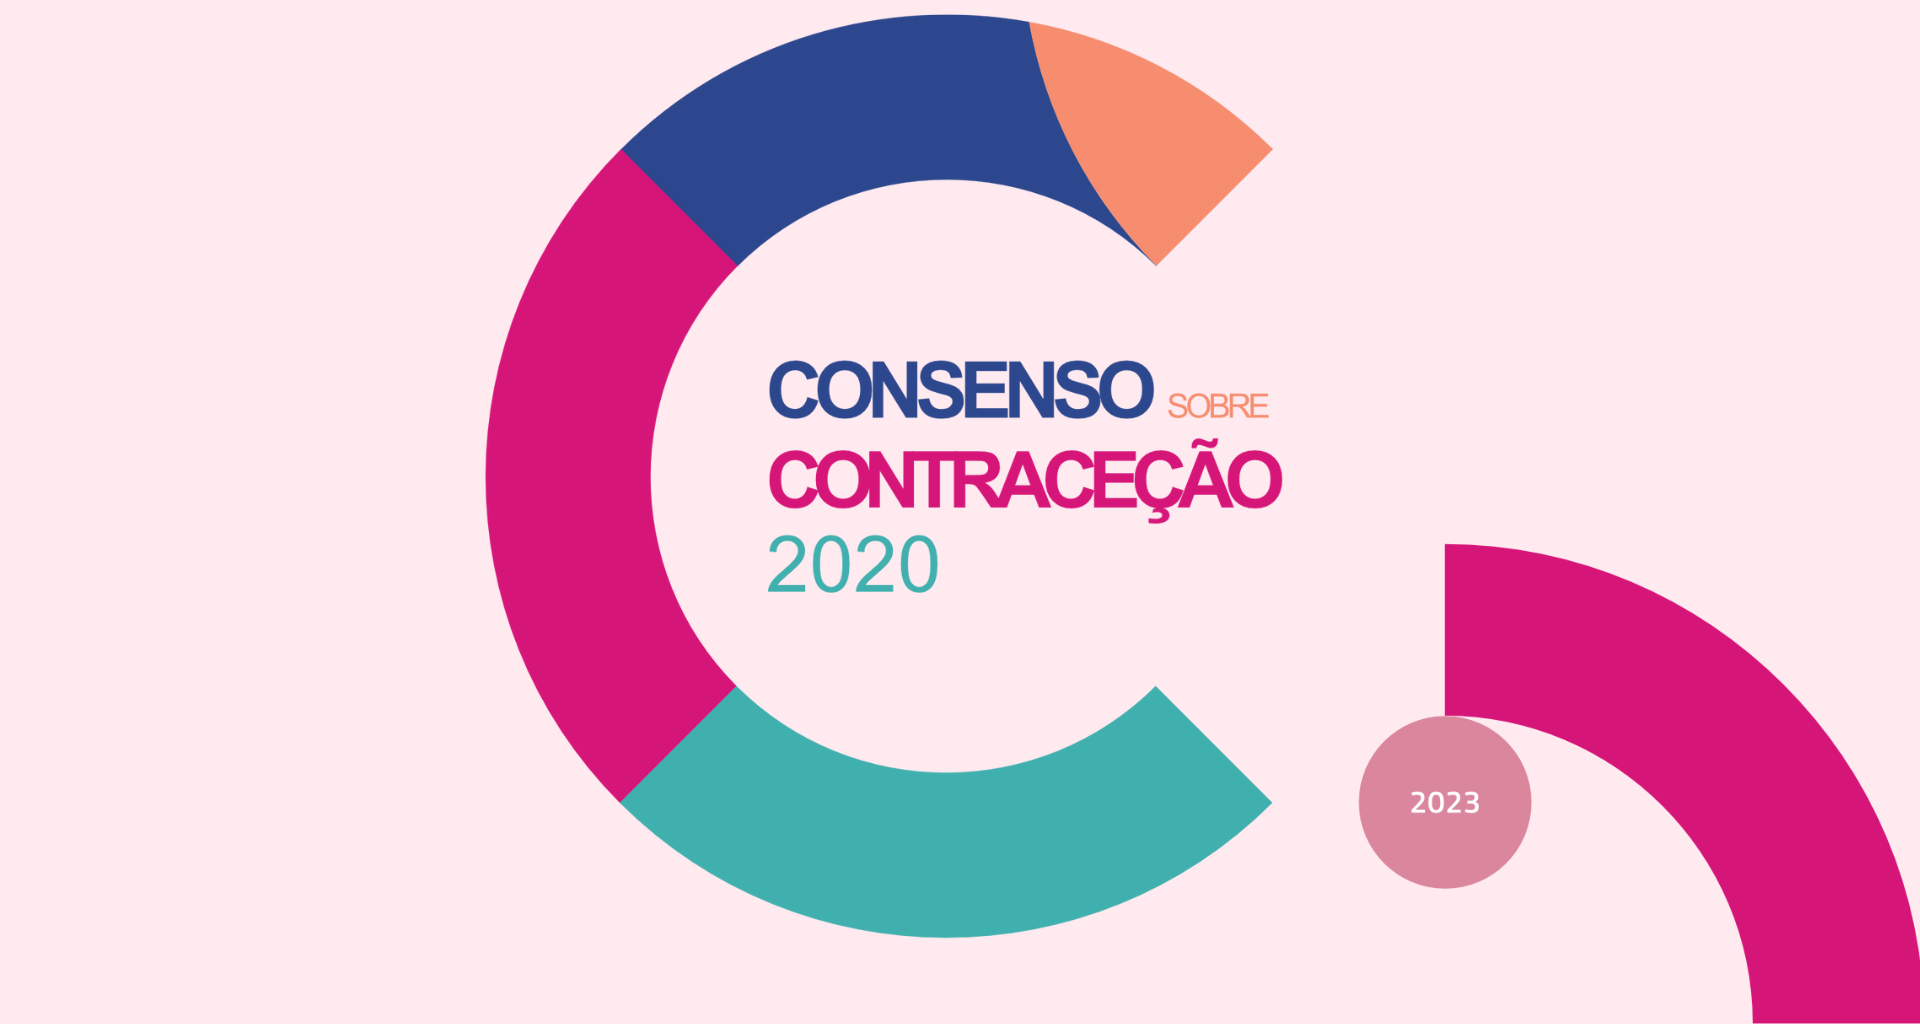 Consenso contraceção versão 2023, revista e adotada pela DGS